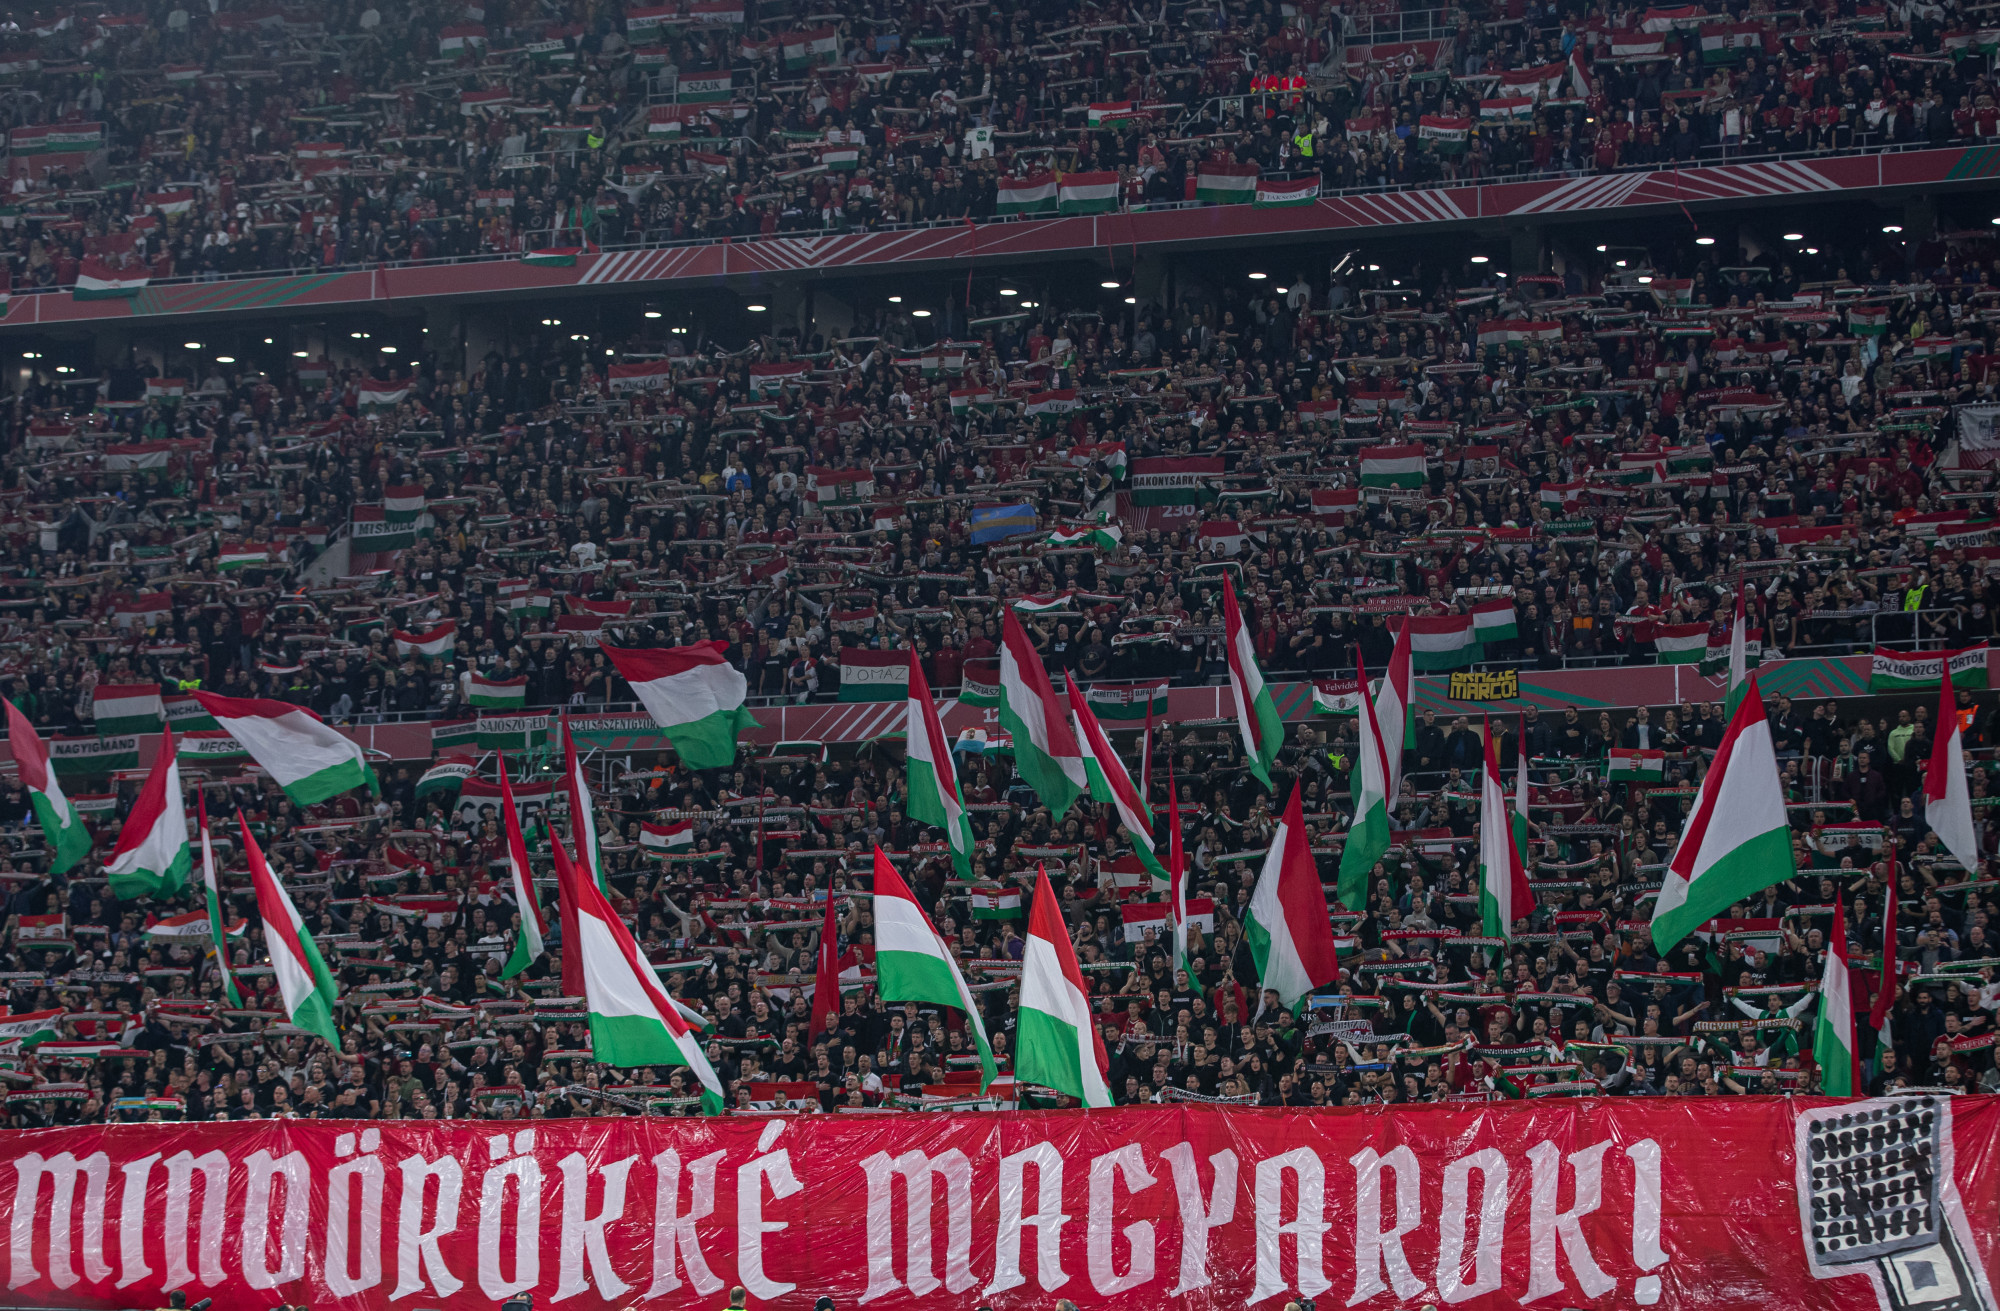 Az MLSZ azt állítja, hogy nem az UEFA, hanem ők engedélyezték a nagy-magyarországos molinó bevitelét a mérkőzésekre